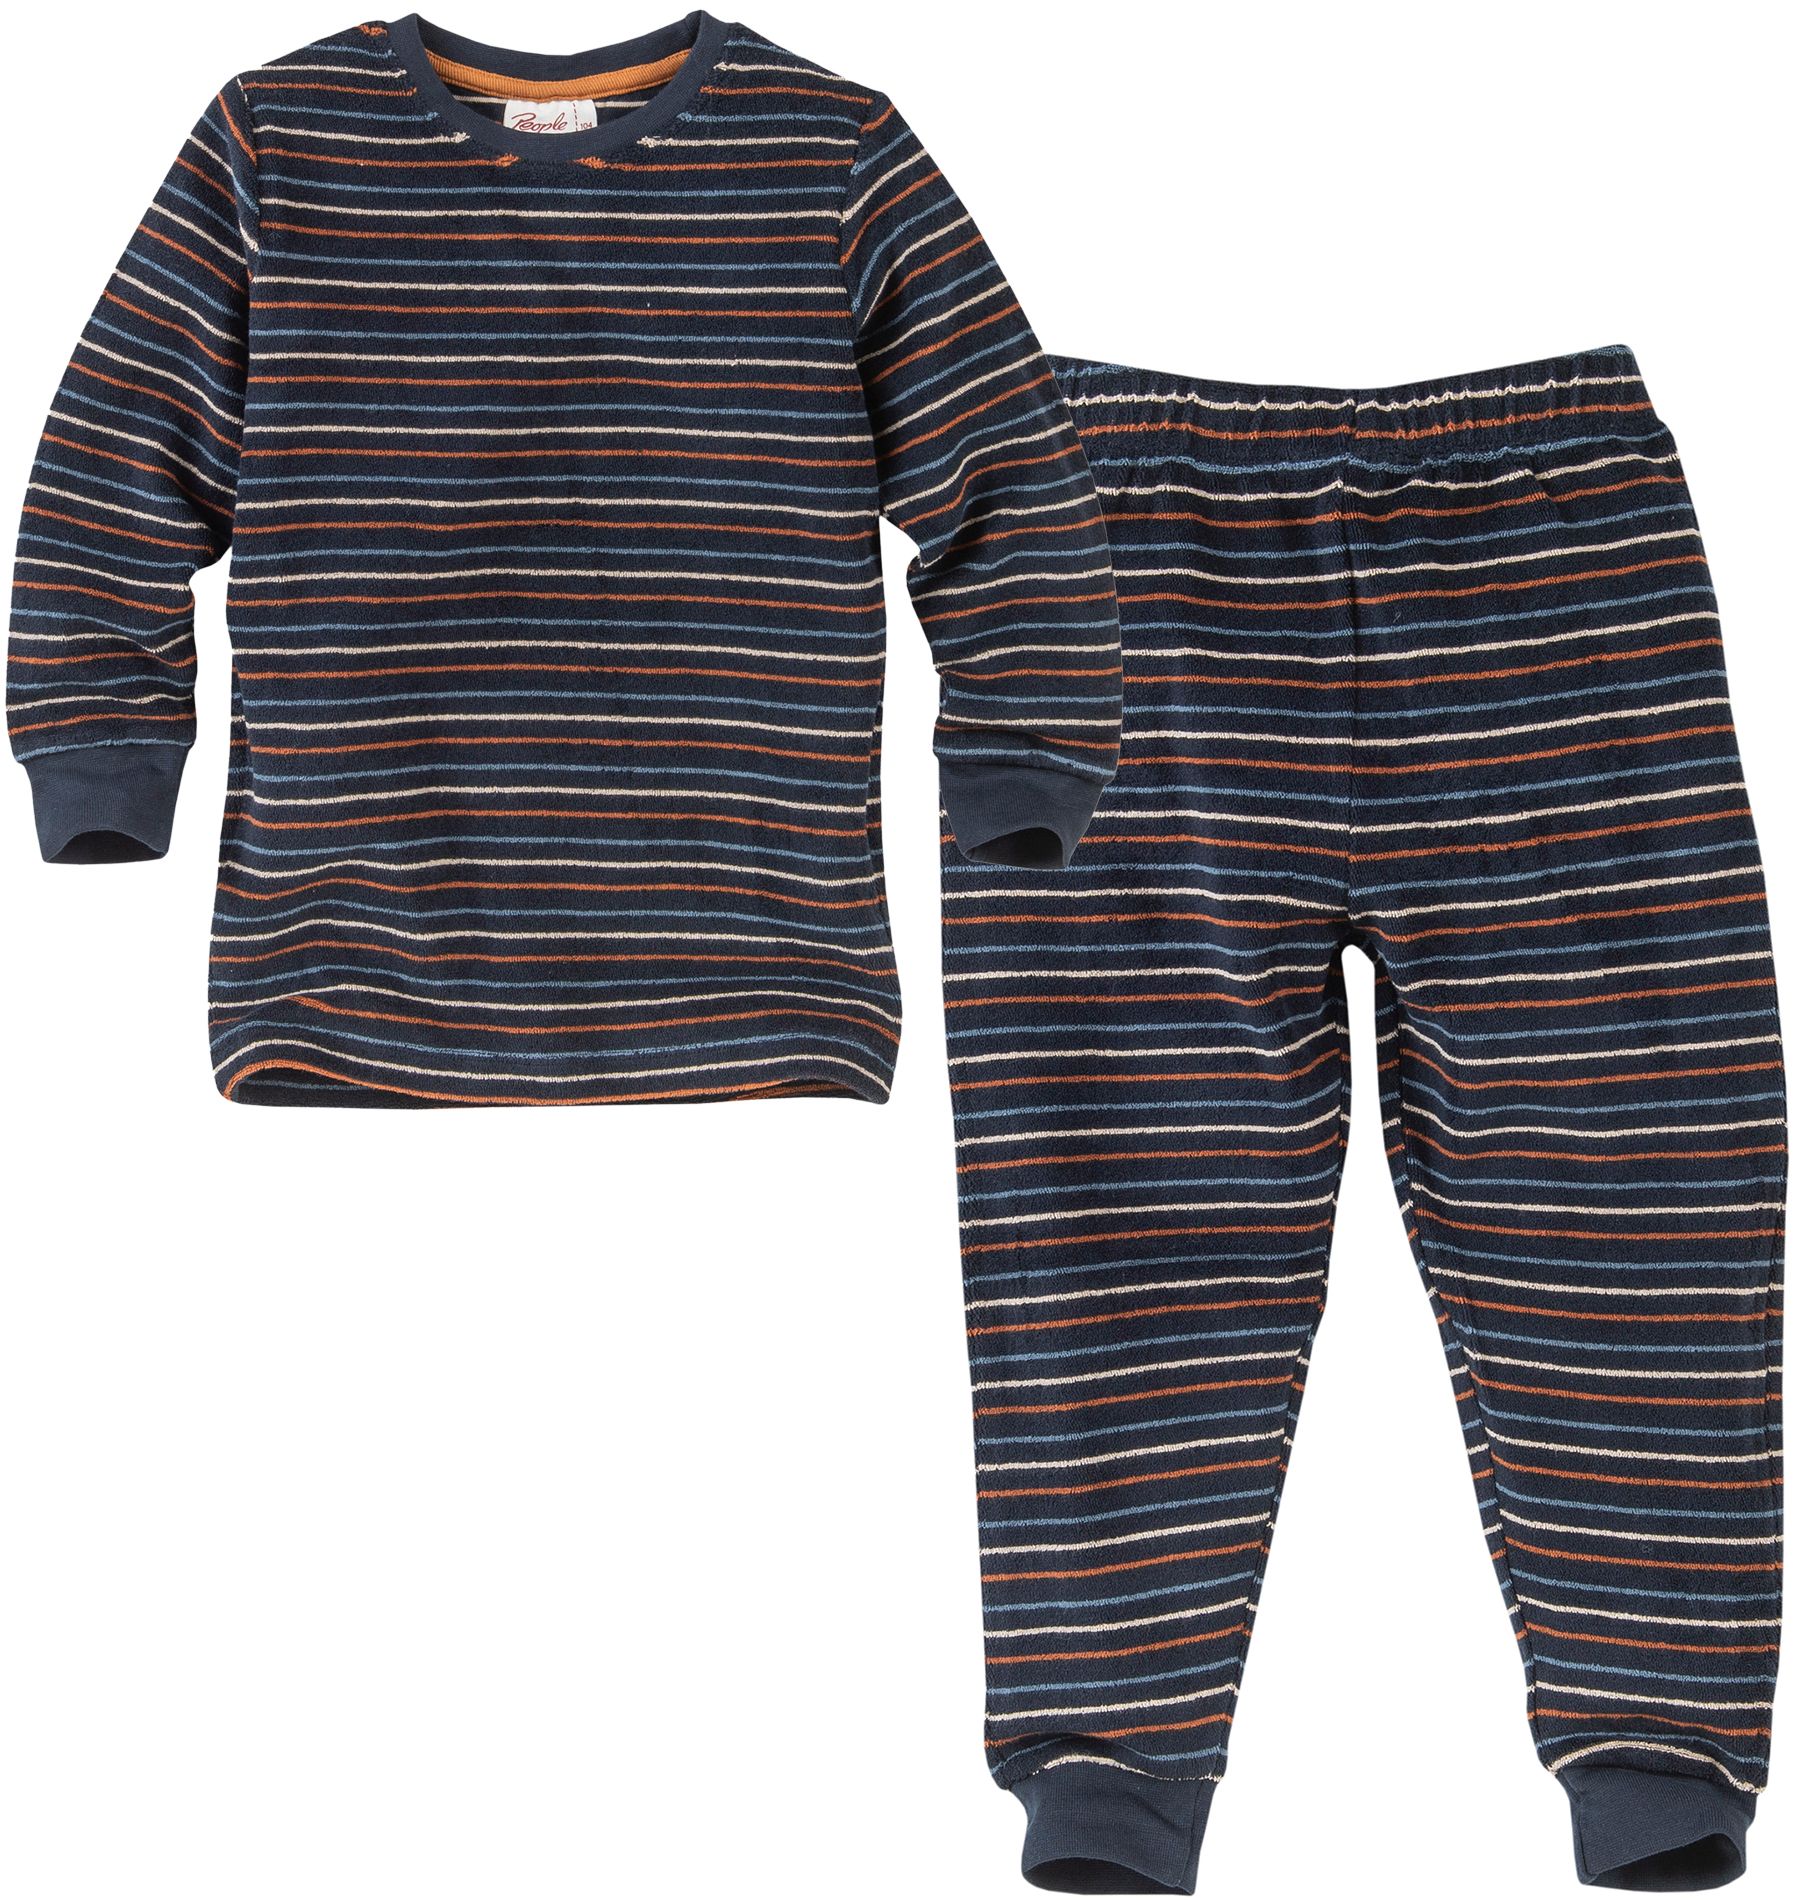 Kinder Schlafanzug Mädchen Größen 104 bis 164 Zweiteiler Pyjama Mädchen Bio-Baumwolle Blau mit Blümchen-Print little label 